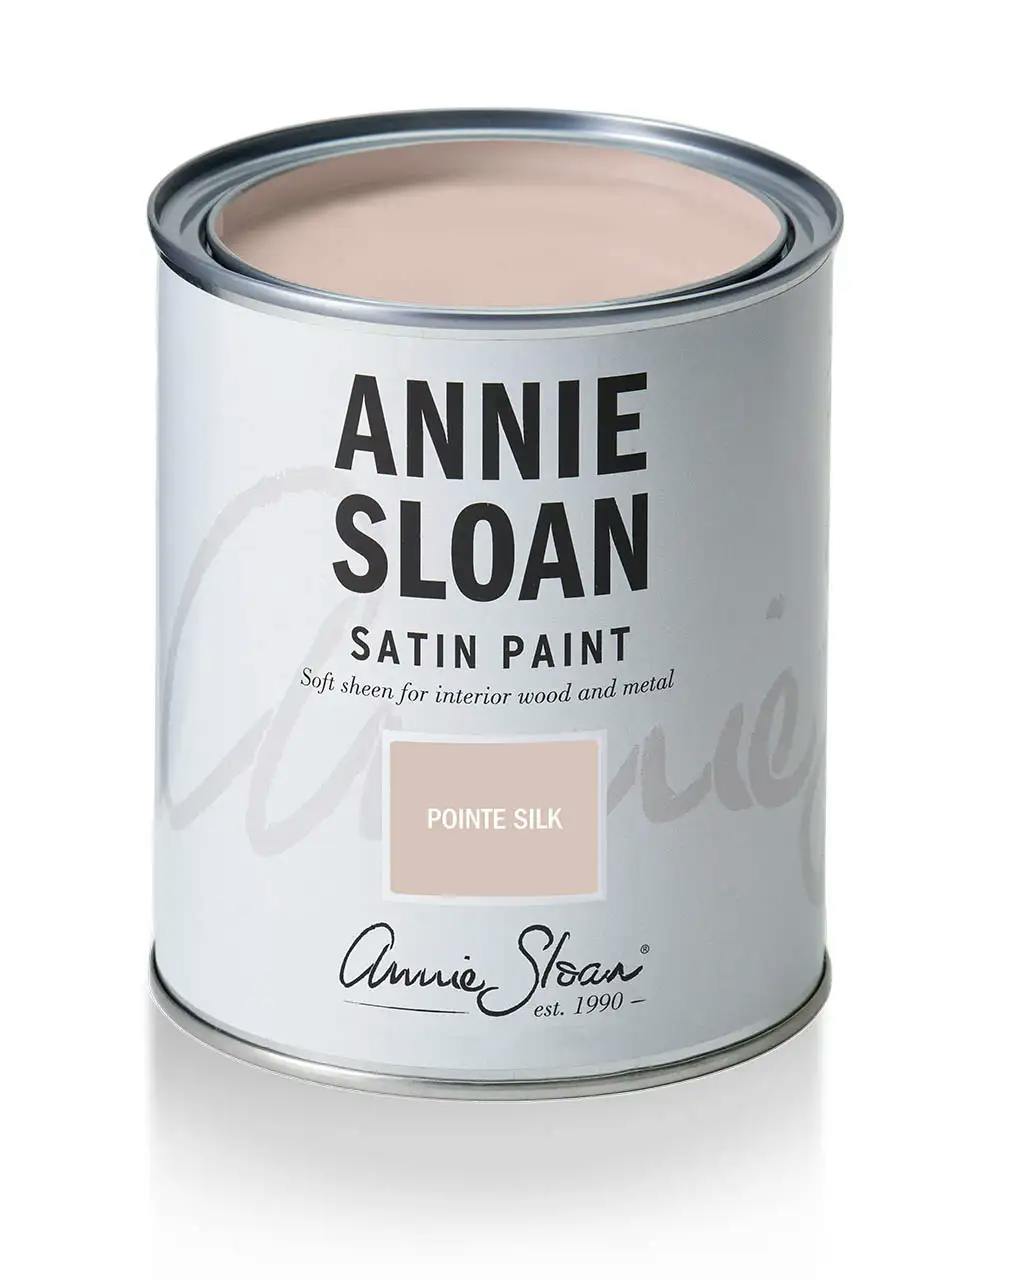 Annie Sloan Satin Paint Pointe Silk 750ml ljus rosa smutsig pastell  Tålig glada ungmöns diversehandel